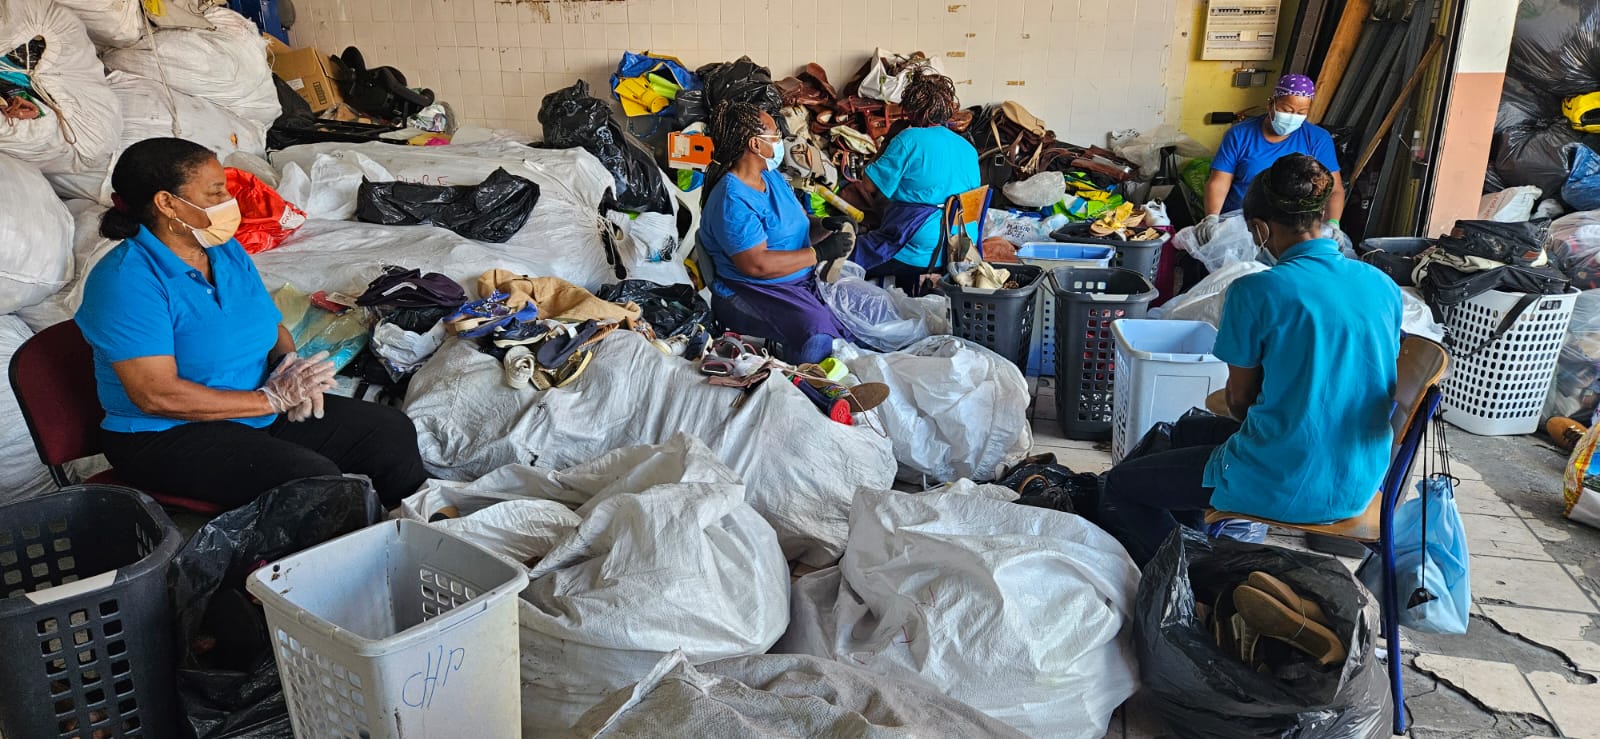     40 nouvelles bornes de collecte de l’Acise installées en Martinique

